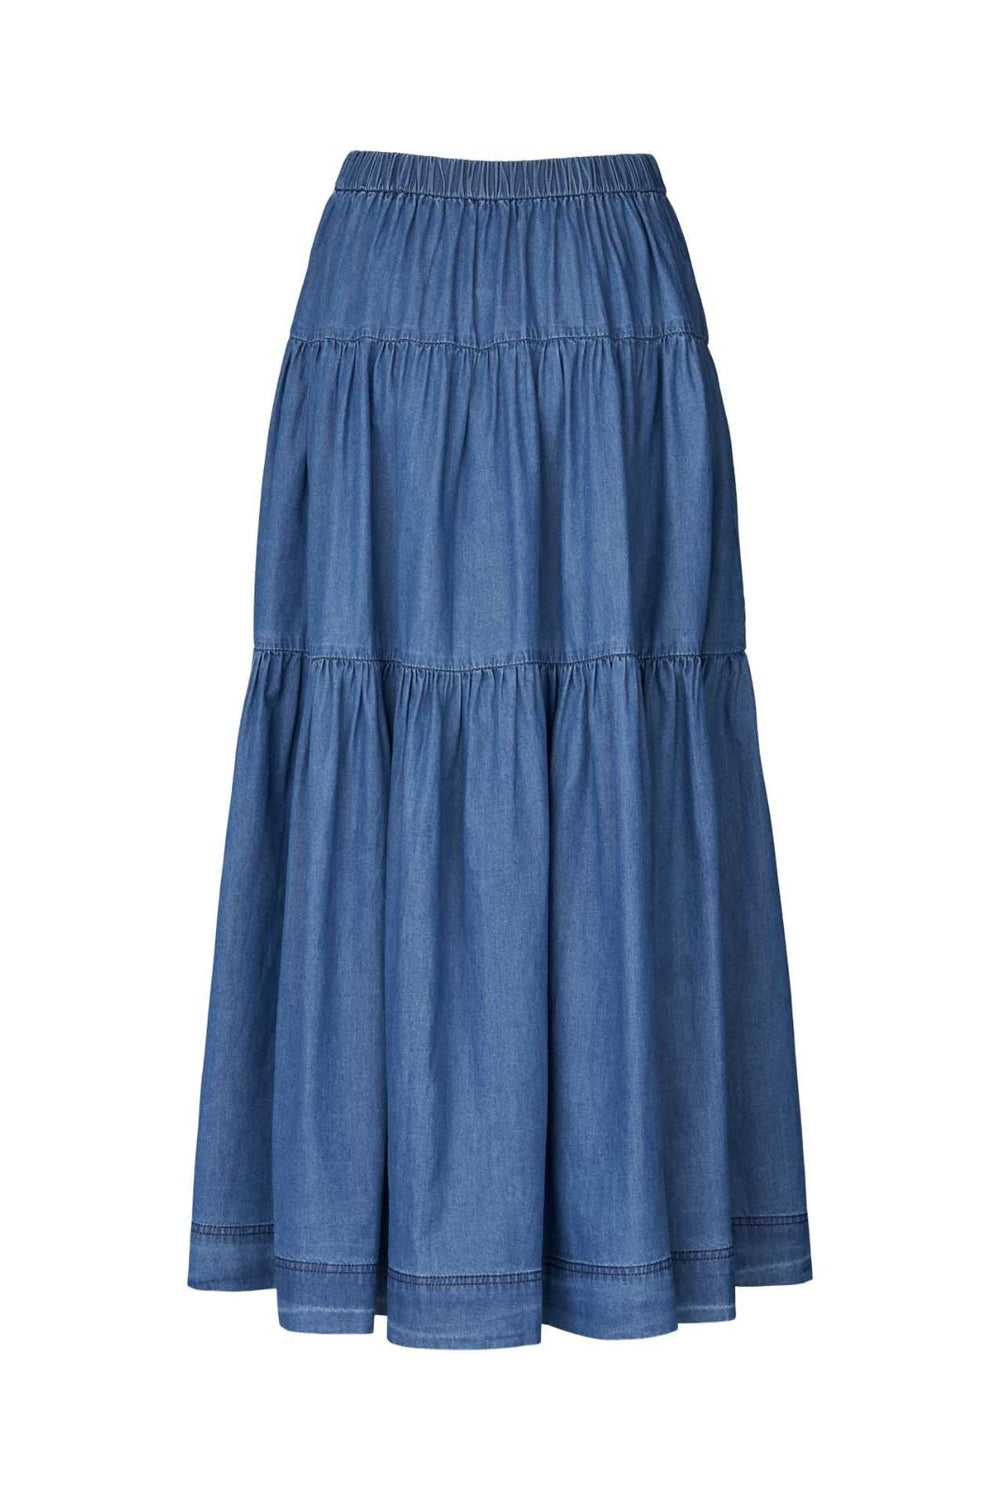 Lollys Laundry - Sunset Skirt - 20 Blue Nederdele 